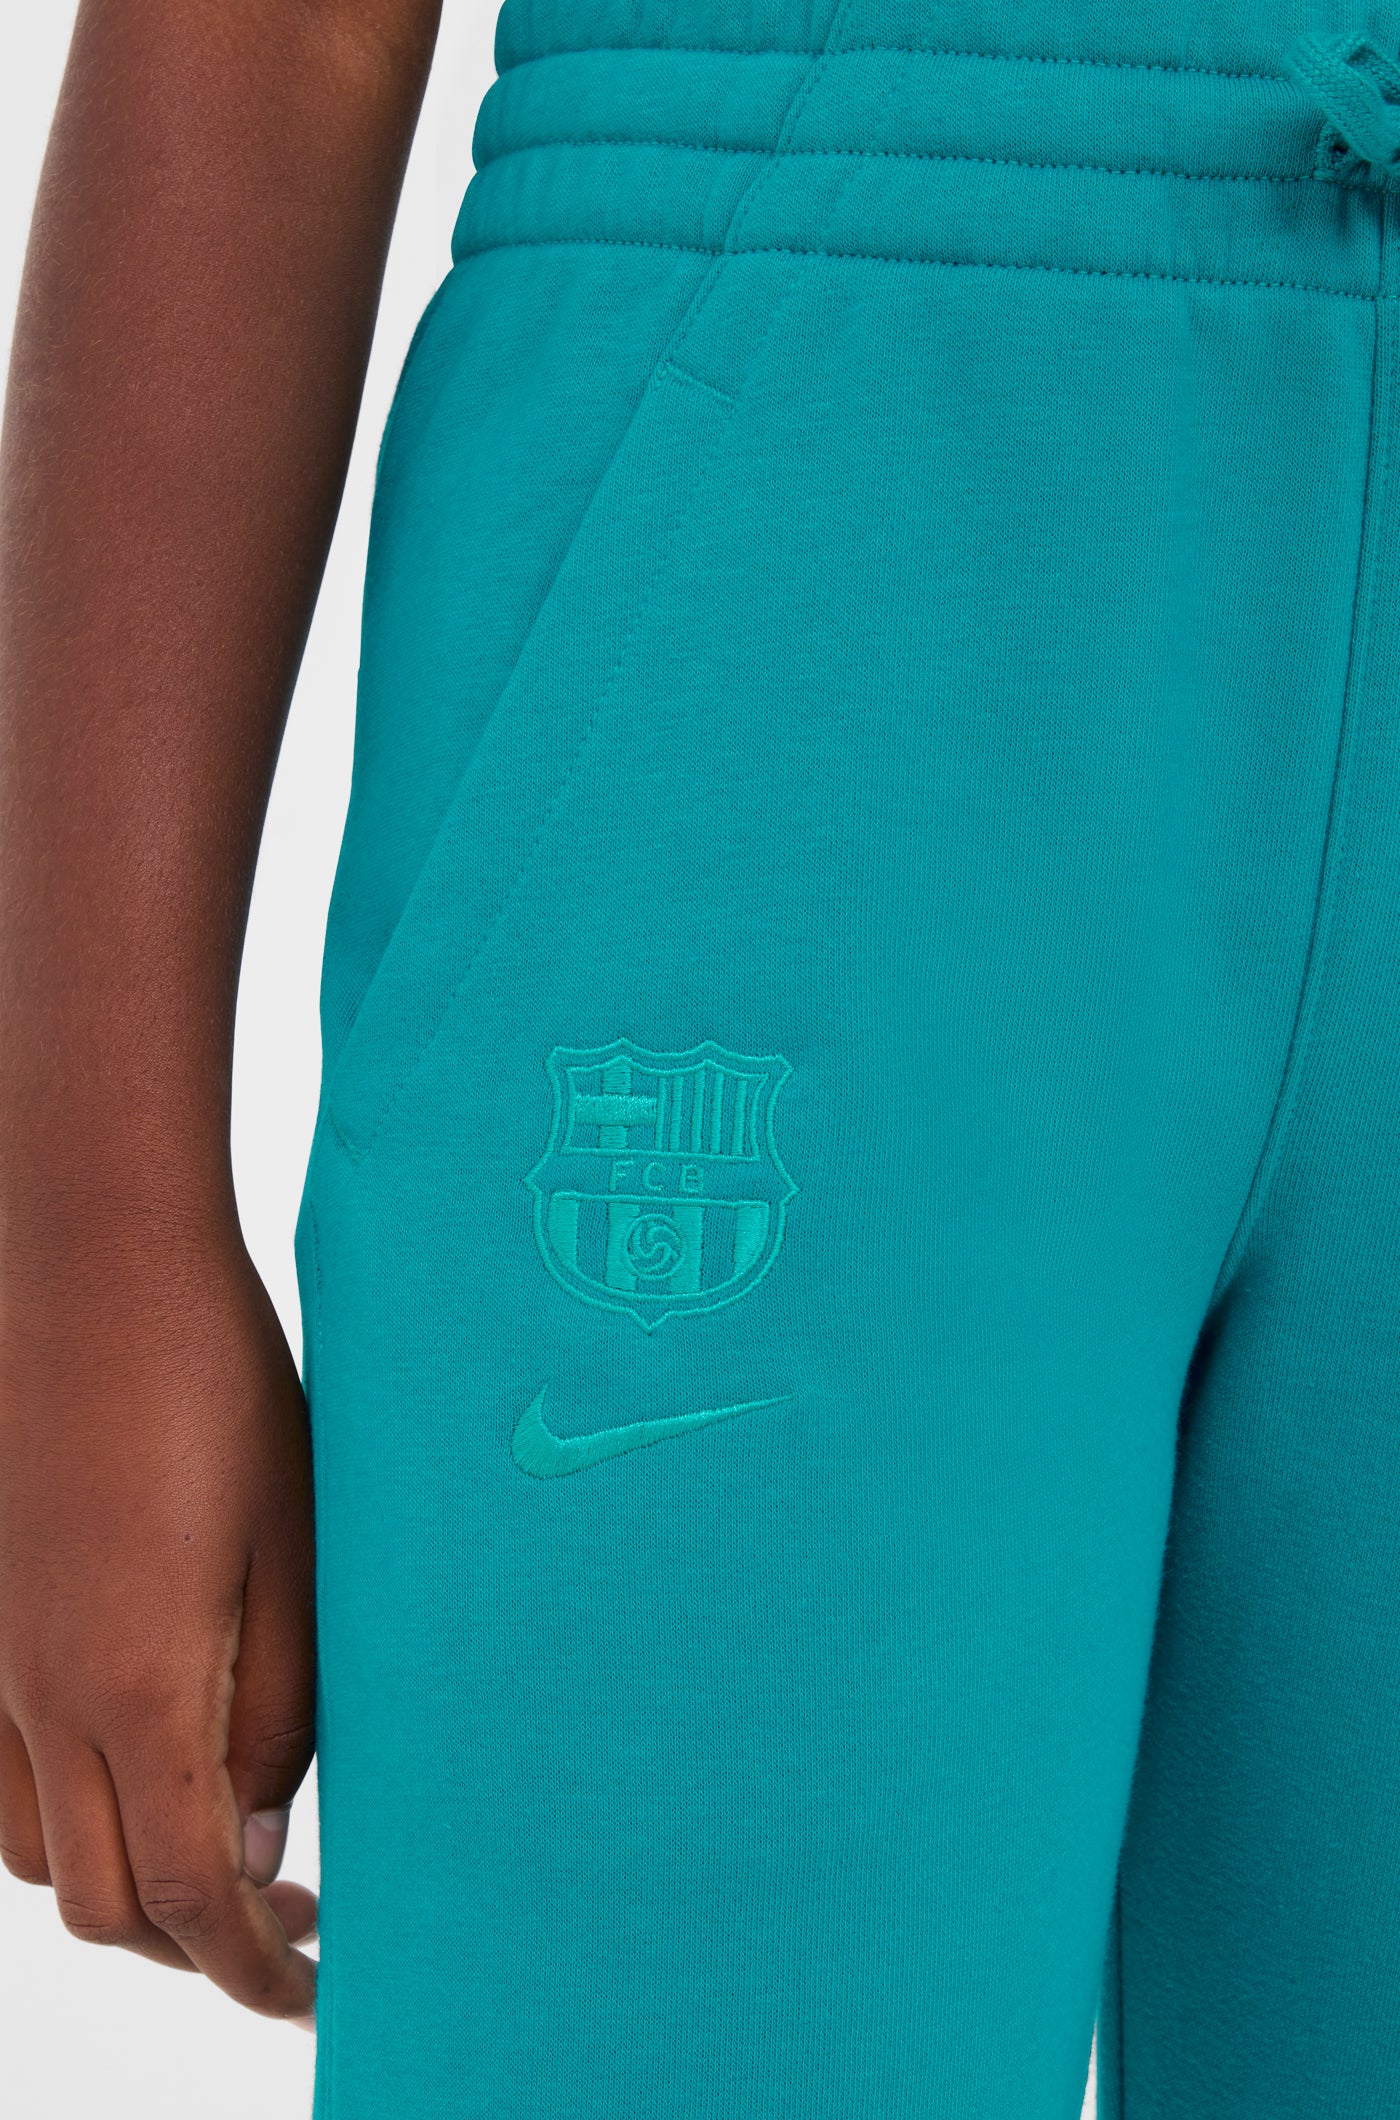 Pantalons escut verd Barça Nike - Junior